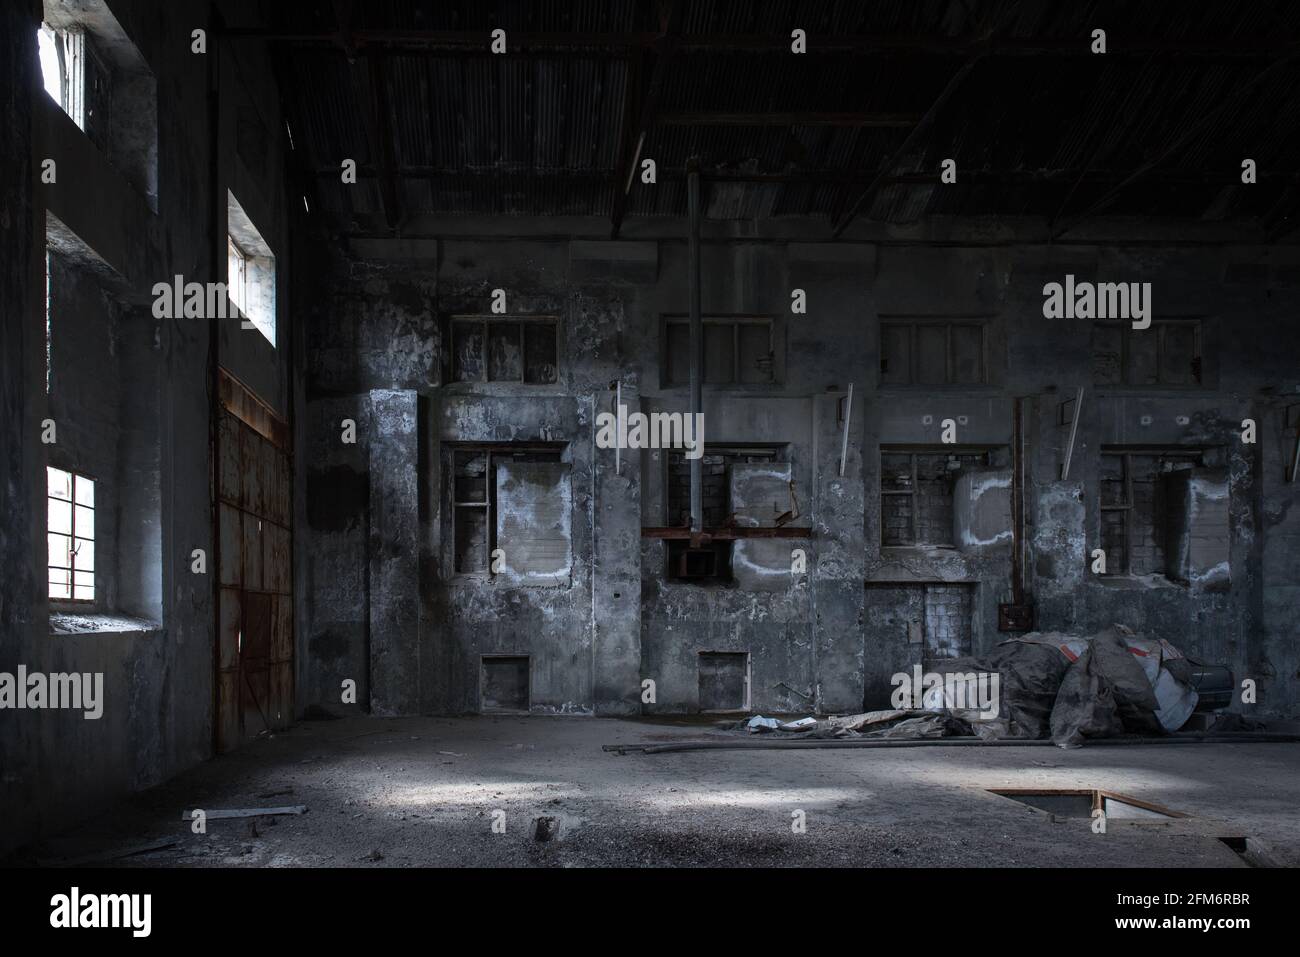 Industriegebäude im Hintergrund. Innenraum einer verlassenen Fabrik mit befleckten Betonwänden, gemauerten Fenstern und alten Geräten Stockfoto